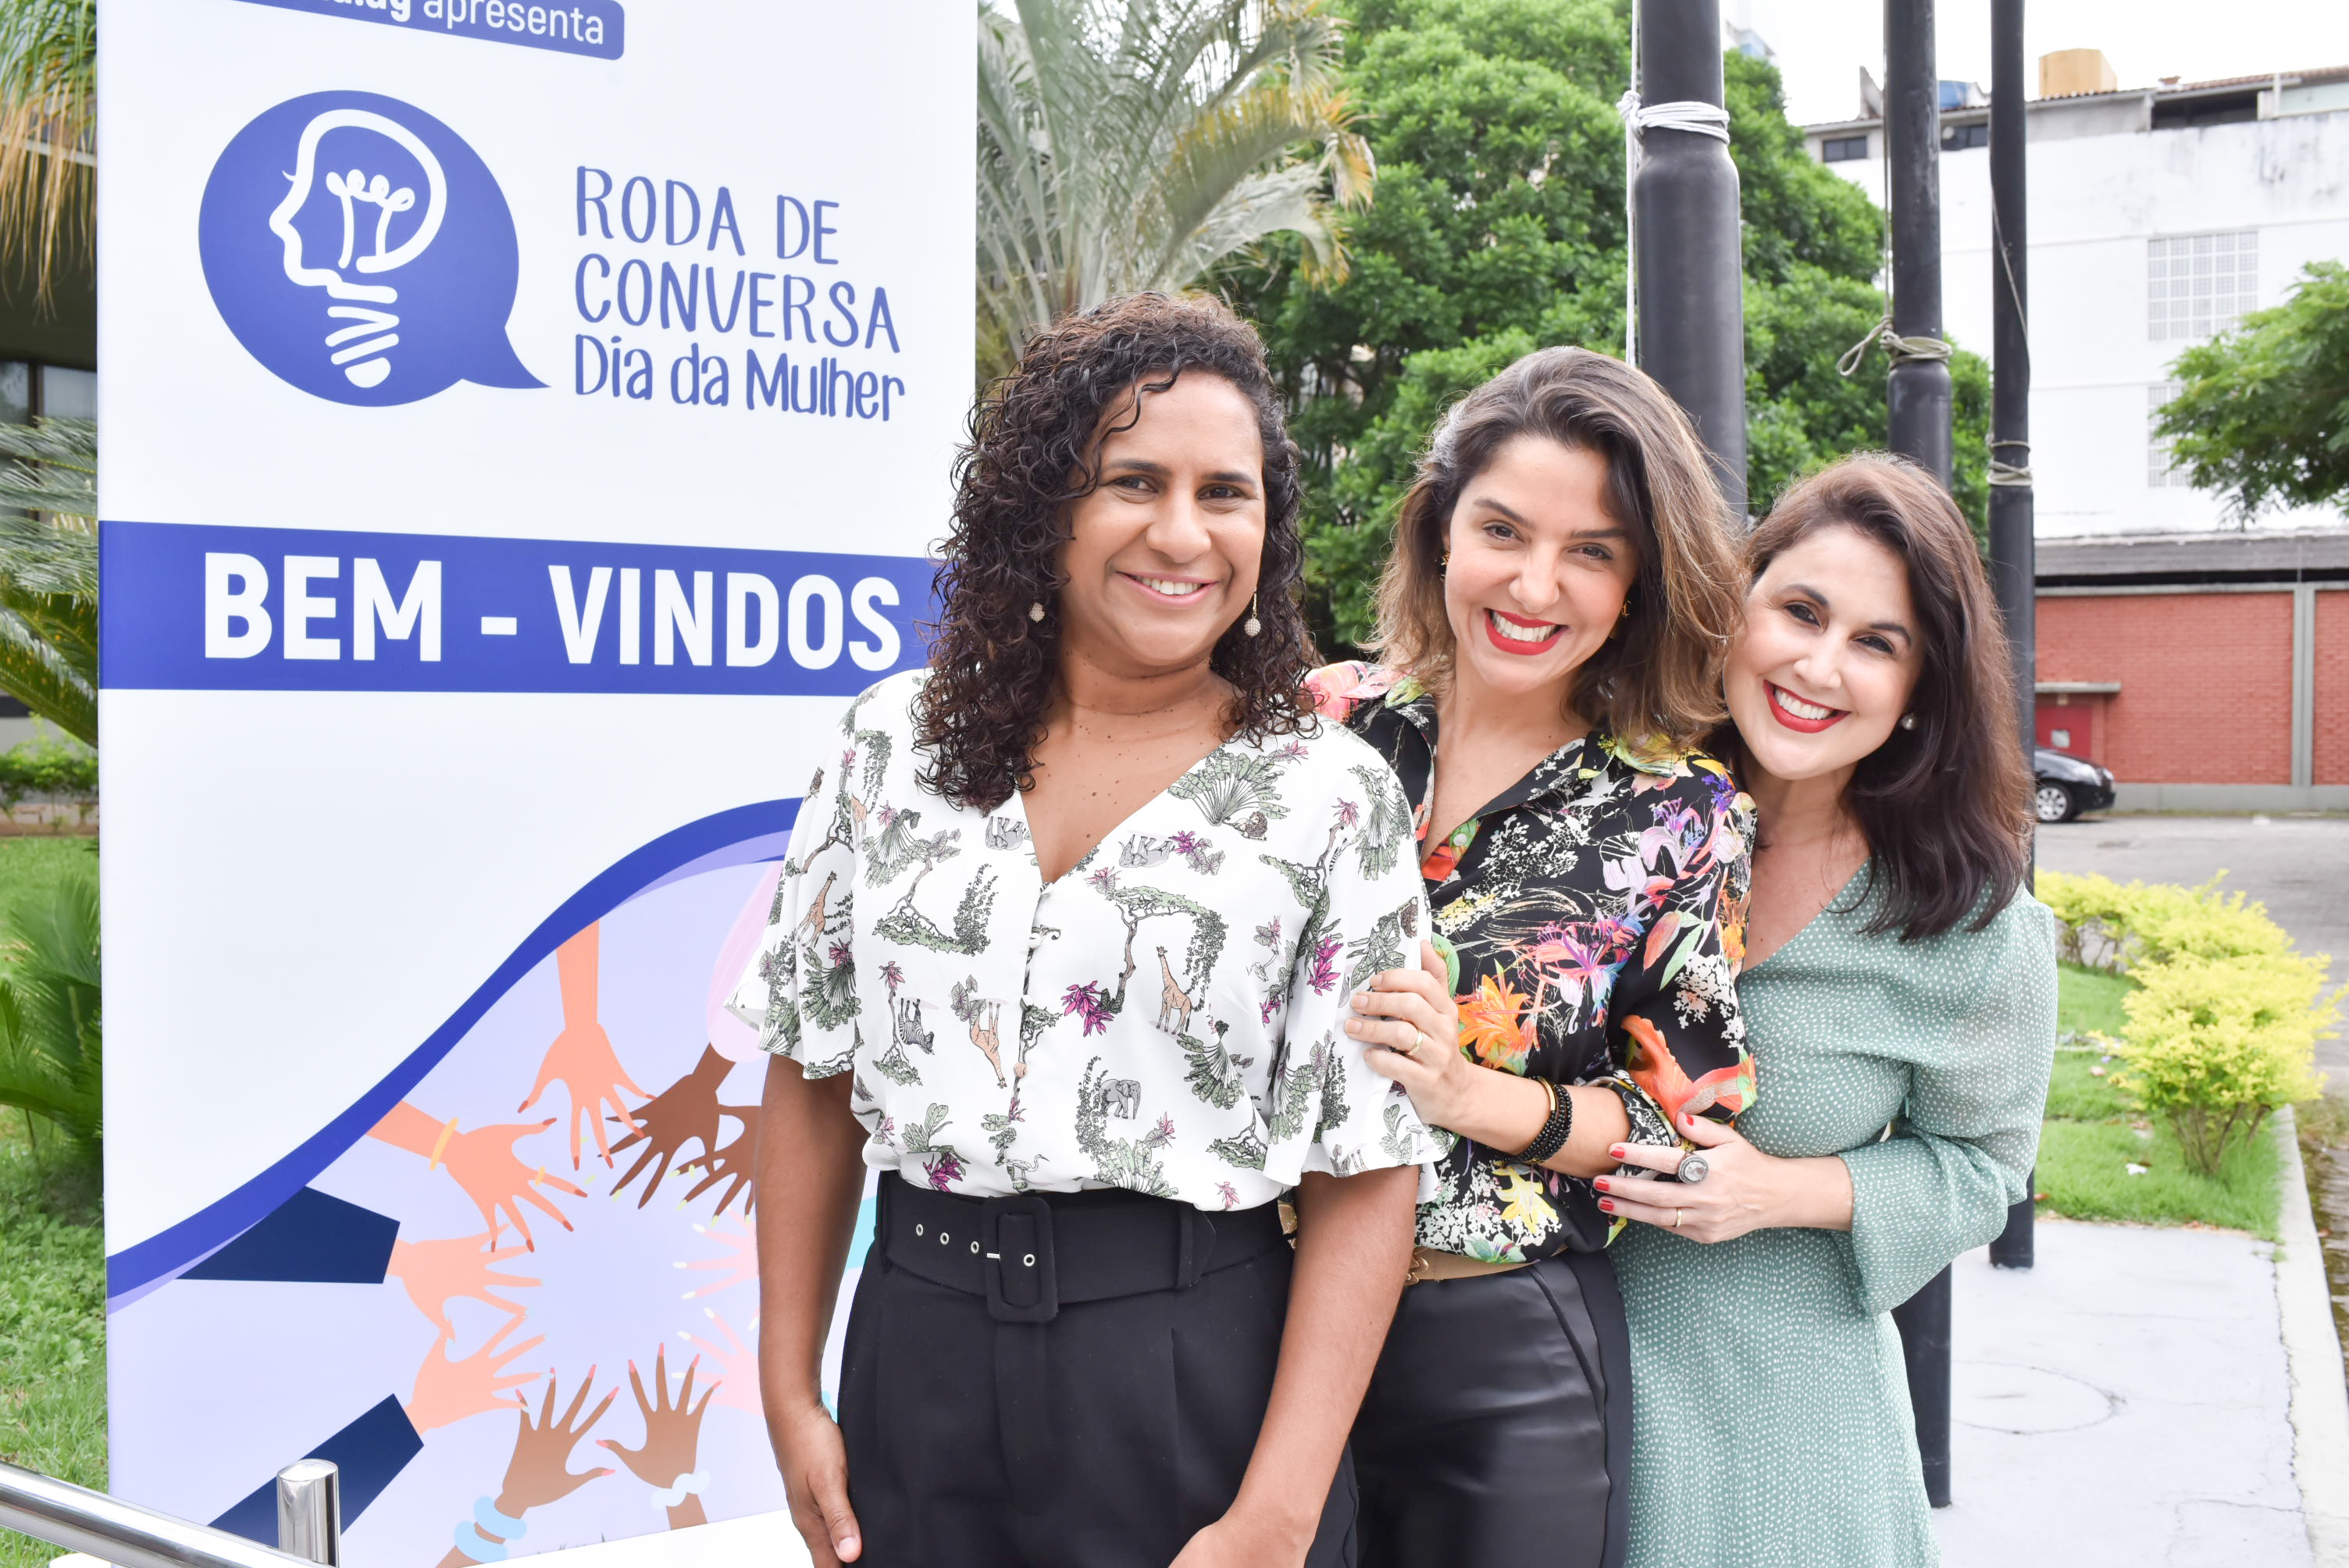 Roda de Conversa da Rede Gazeta 2020 - Dia Internacional da Mulher: Jaqueline Moraes, Mariana Perini e Renata Rasseli